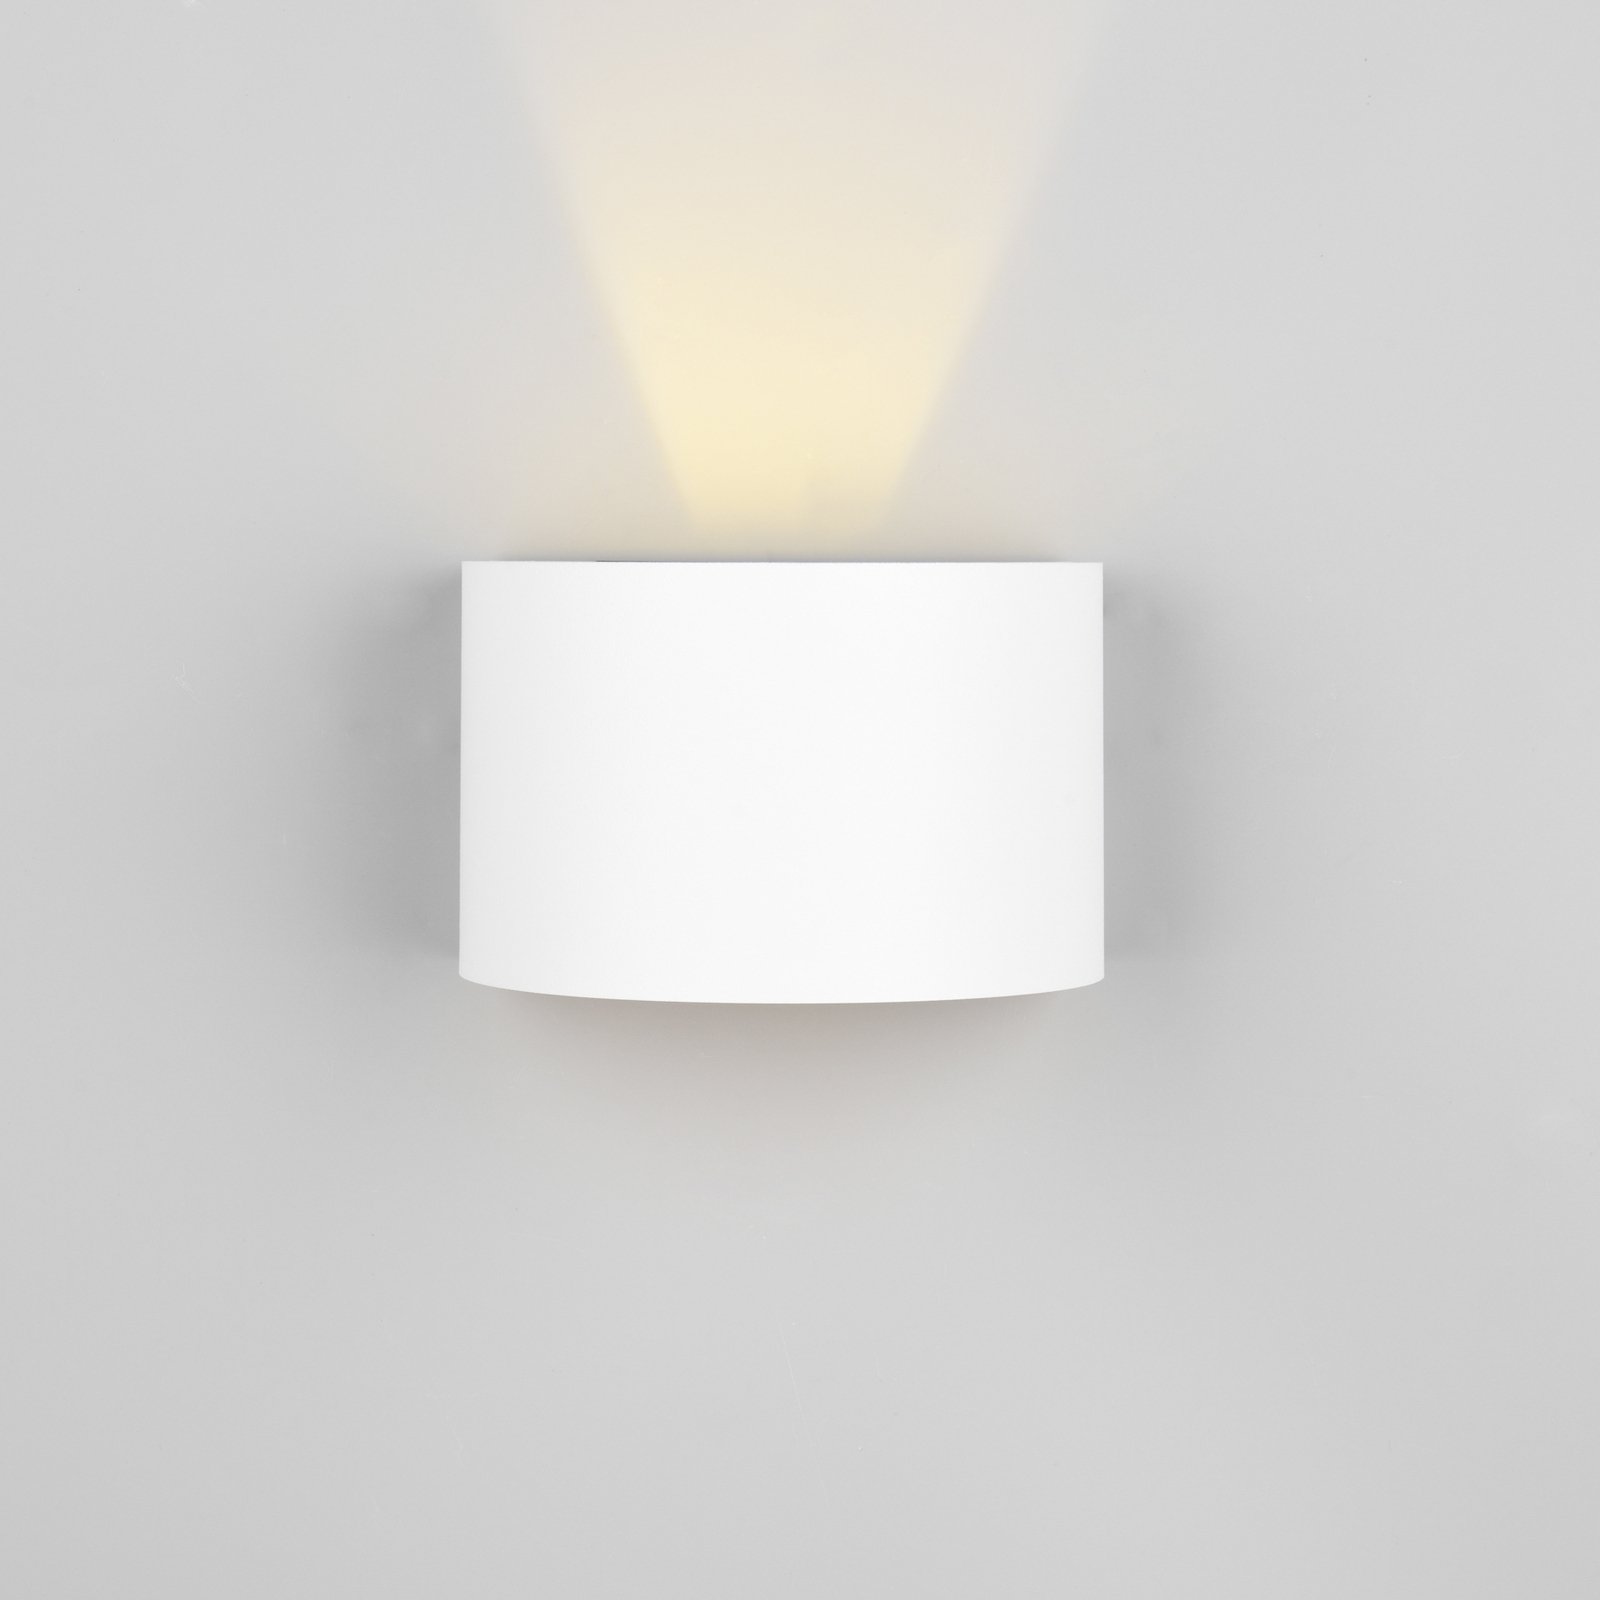 LED oppladbar utendørs vegglampe Talent, hvit, bredde 16 cm, sensor